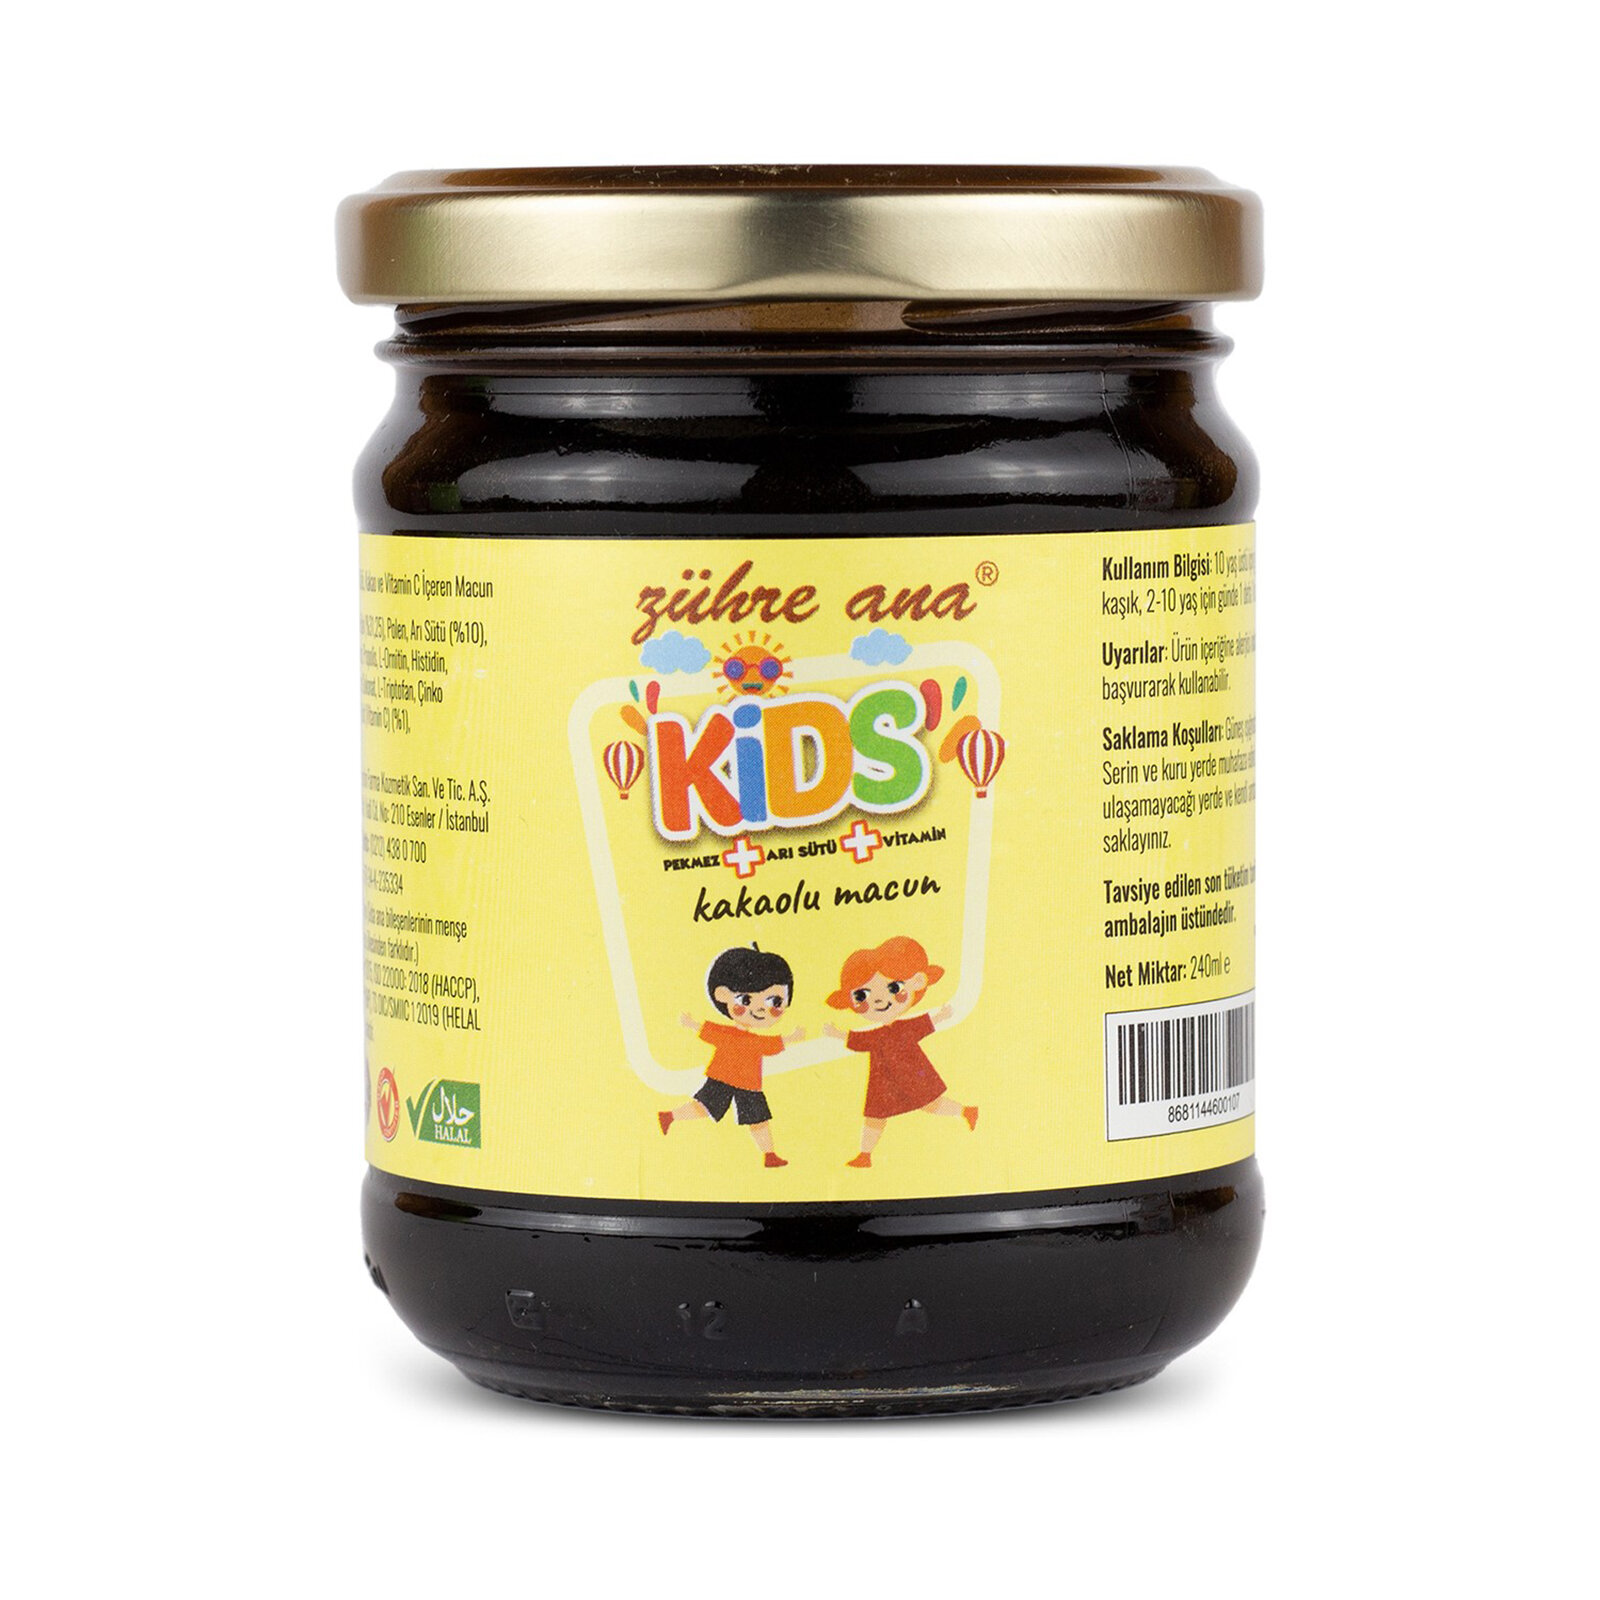 Kids Çocuklar Için Özel - Arı Sütü, Pekmez, Bal Ve Vitamin Katkılı Kakaolu Macun